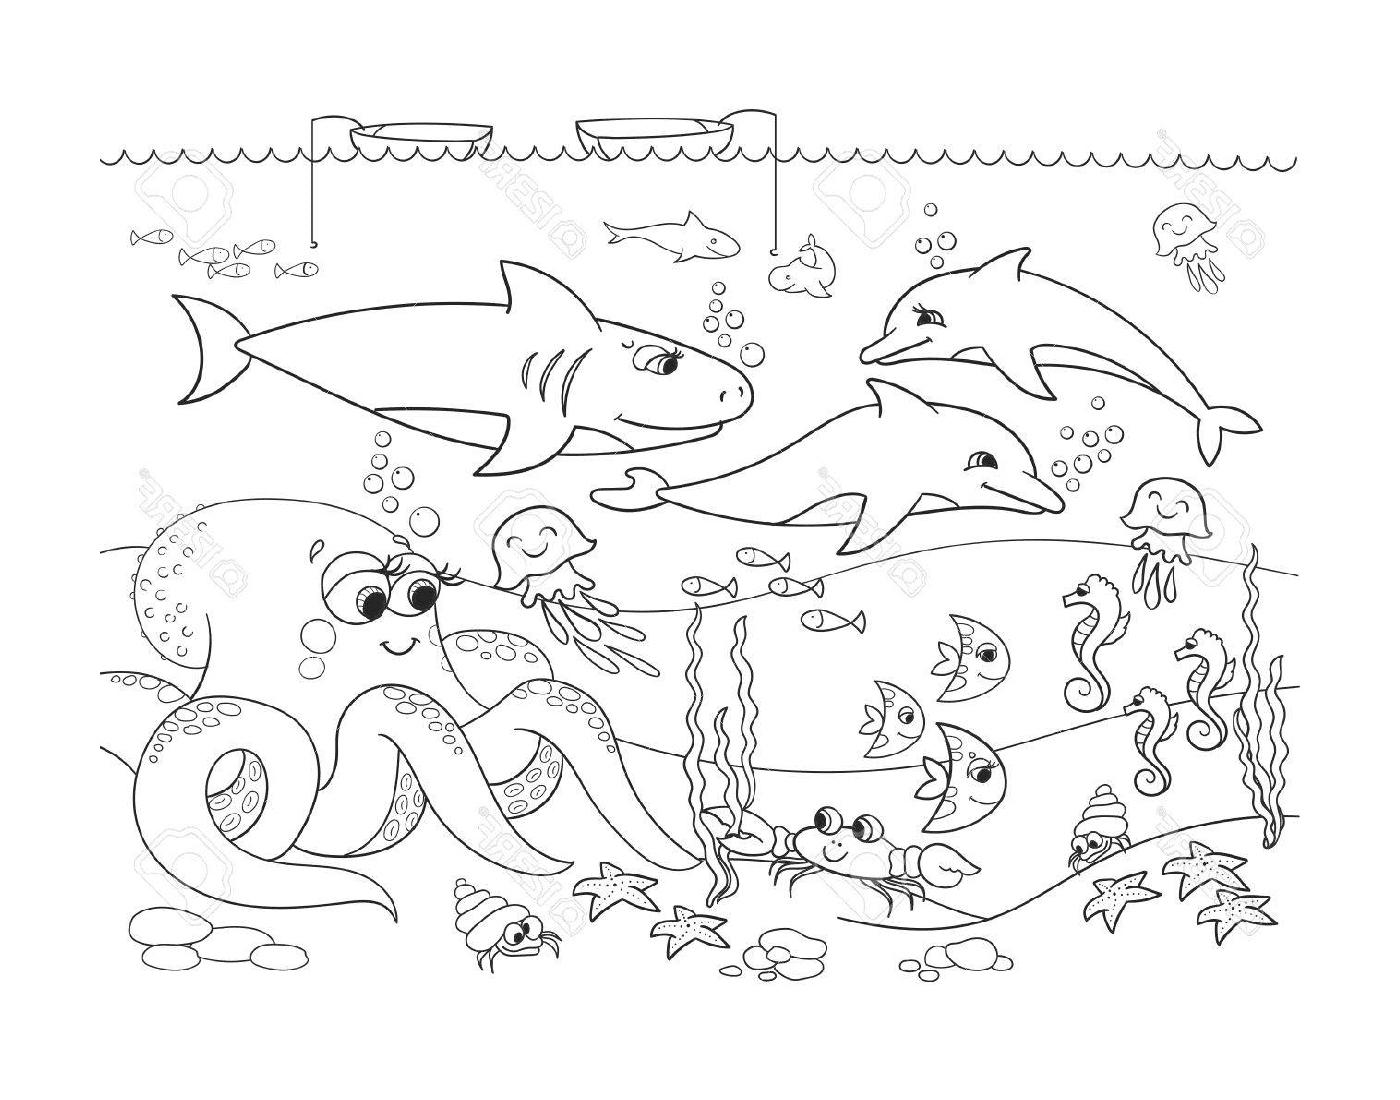  uma cena subaquática com muitos animais diferentes 